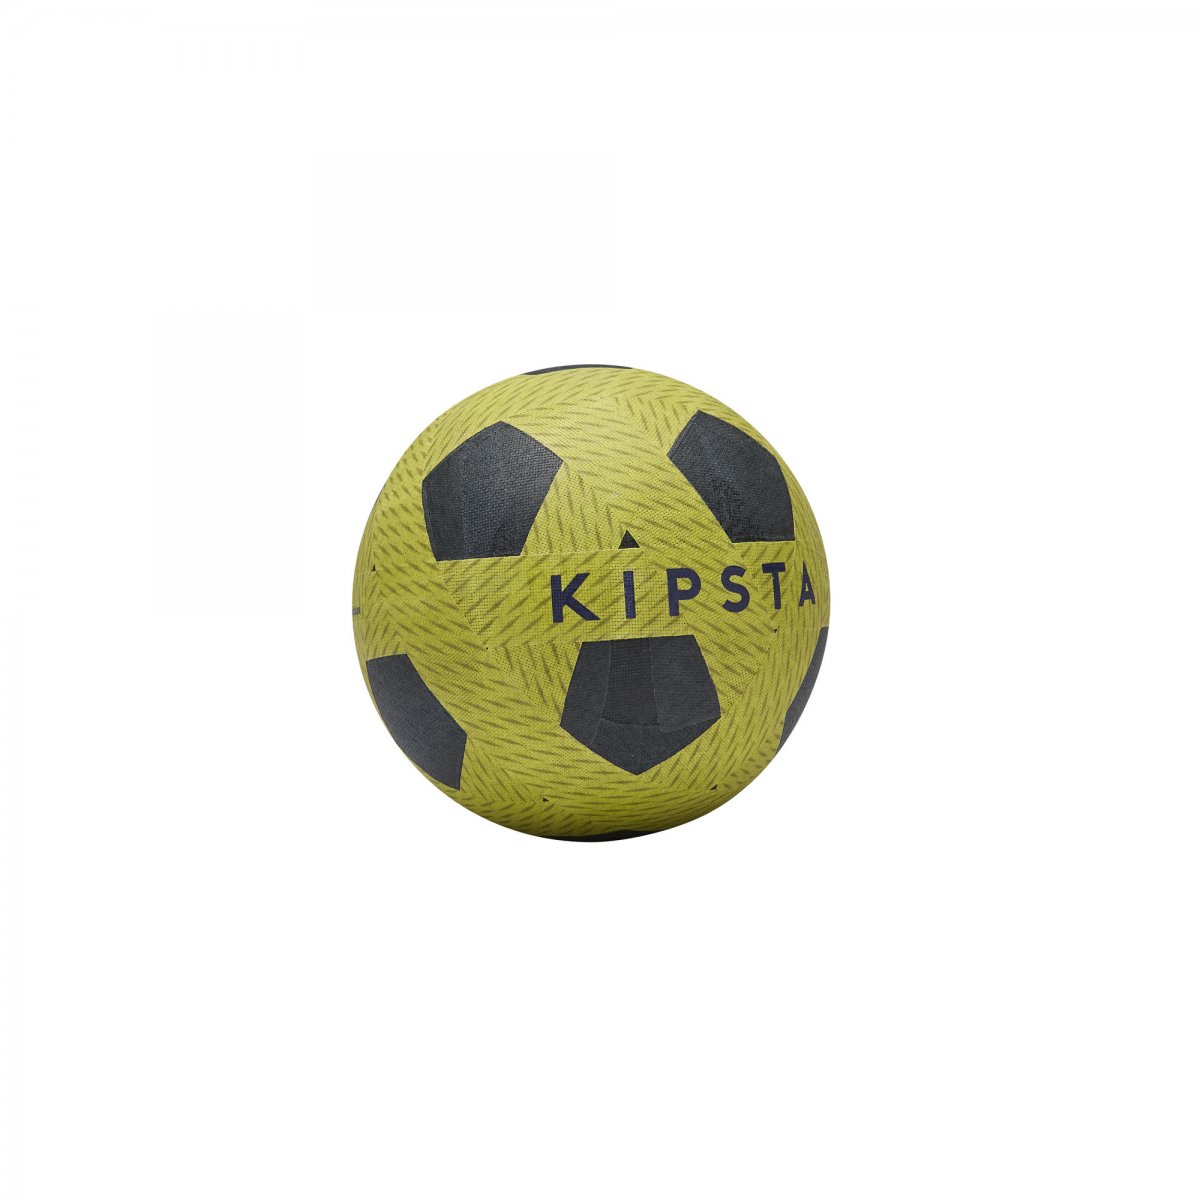 Футбольный мини мяч Ballground 100 KIPSTA